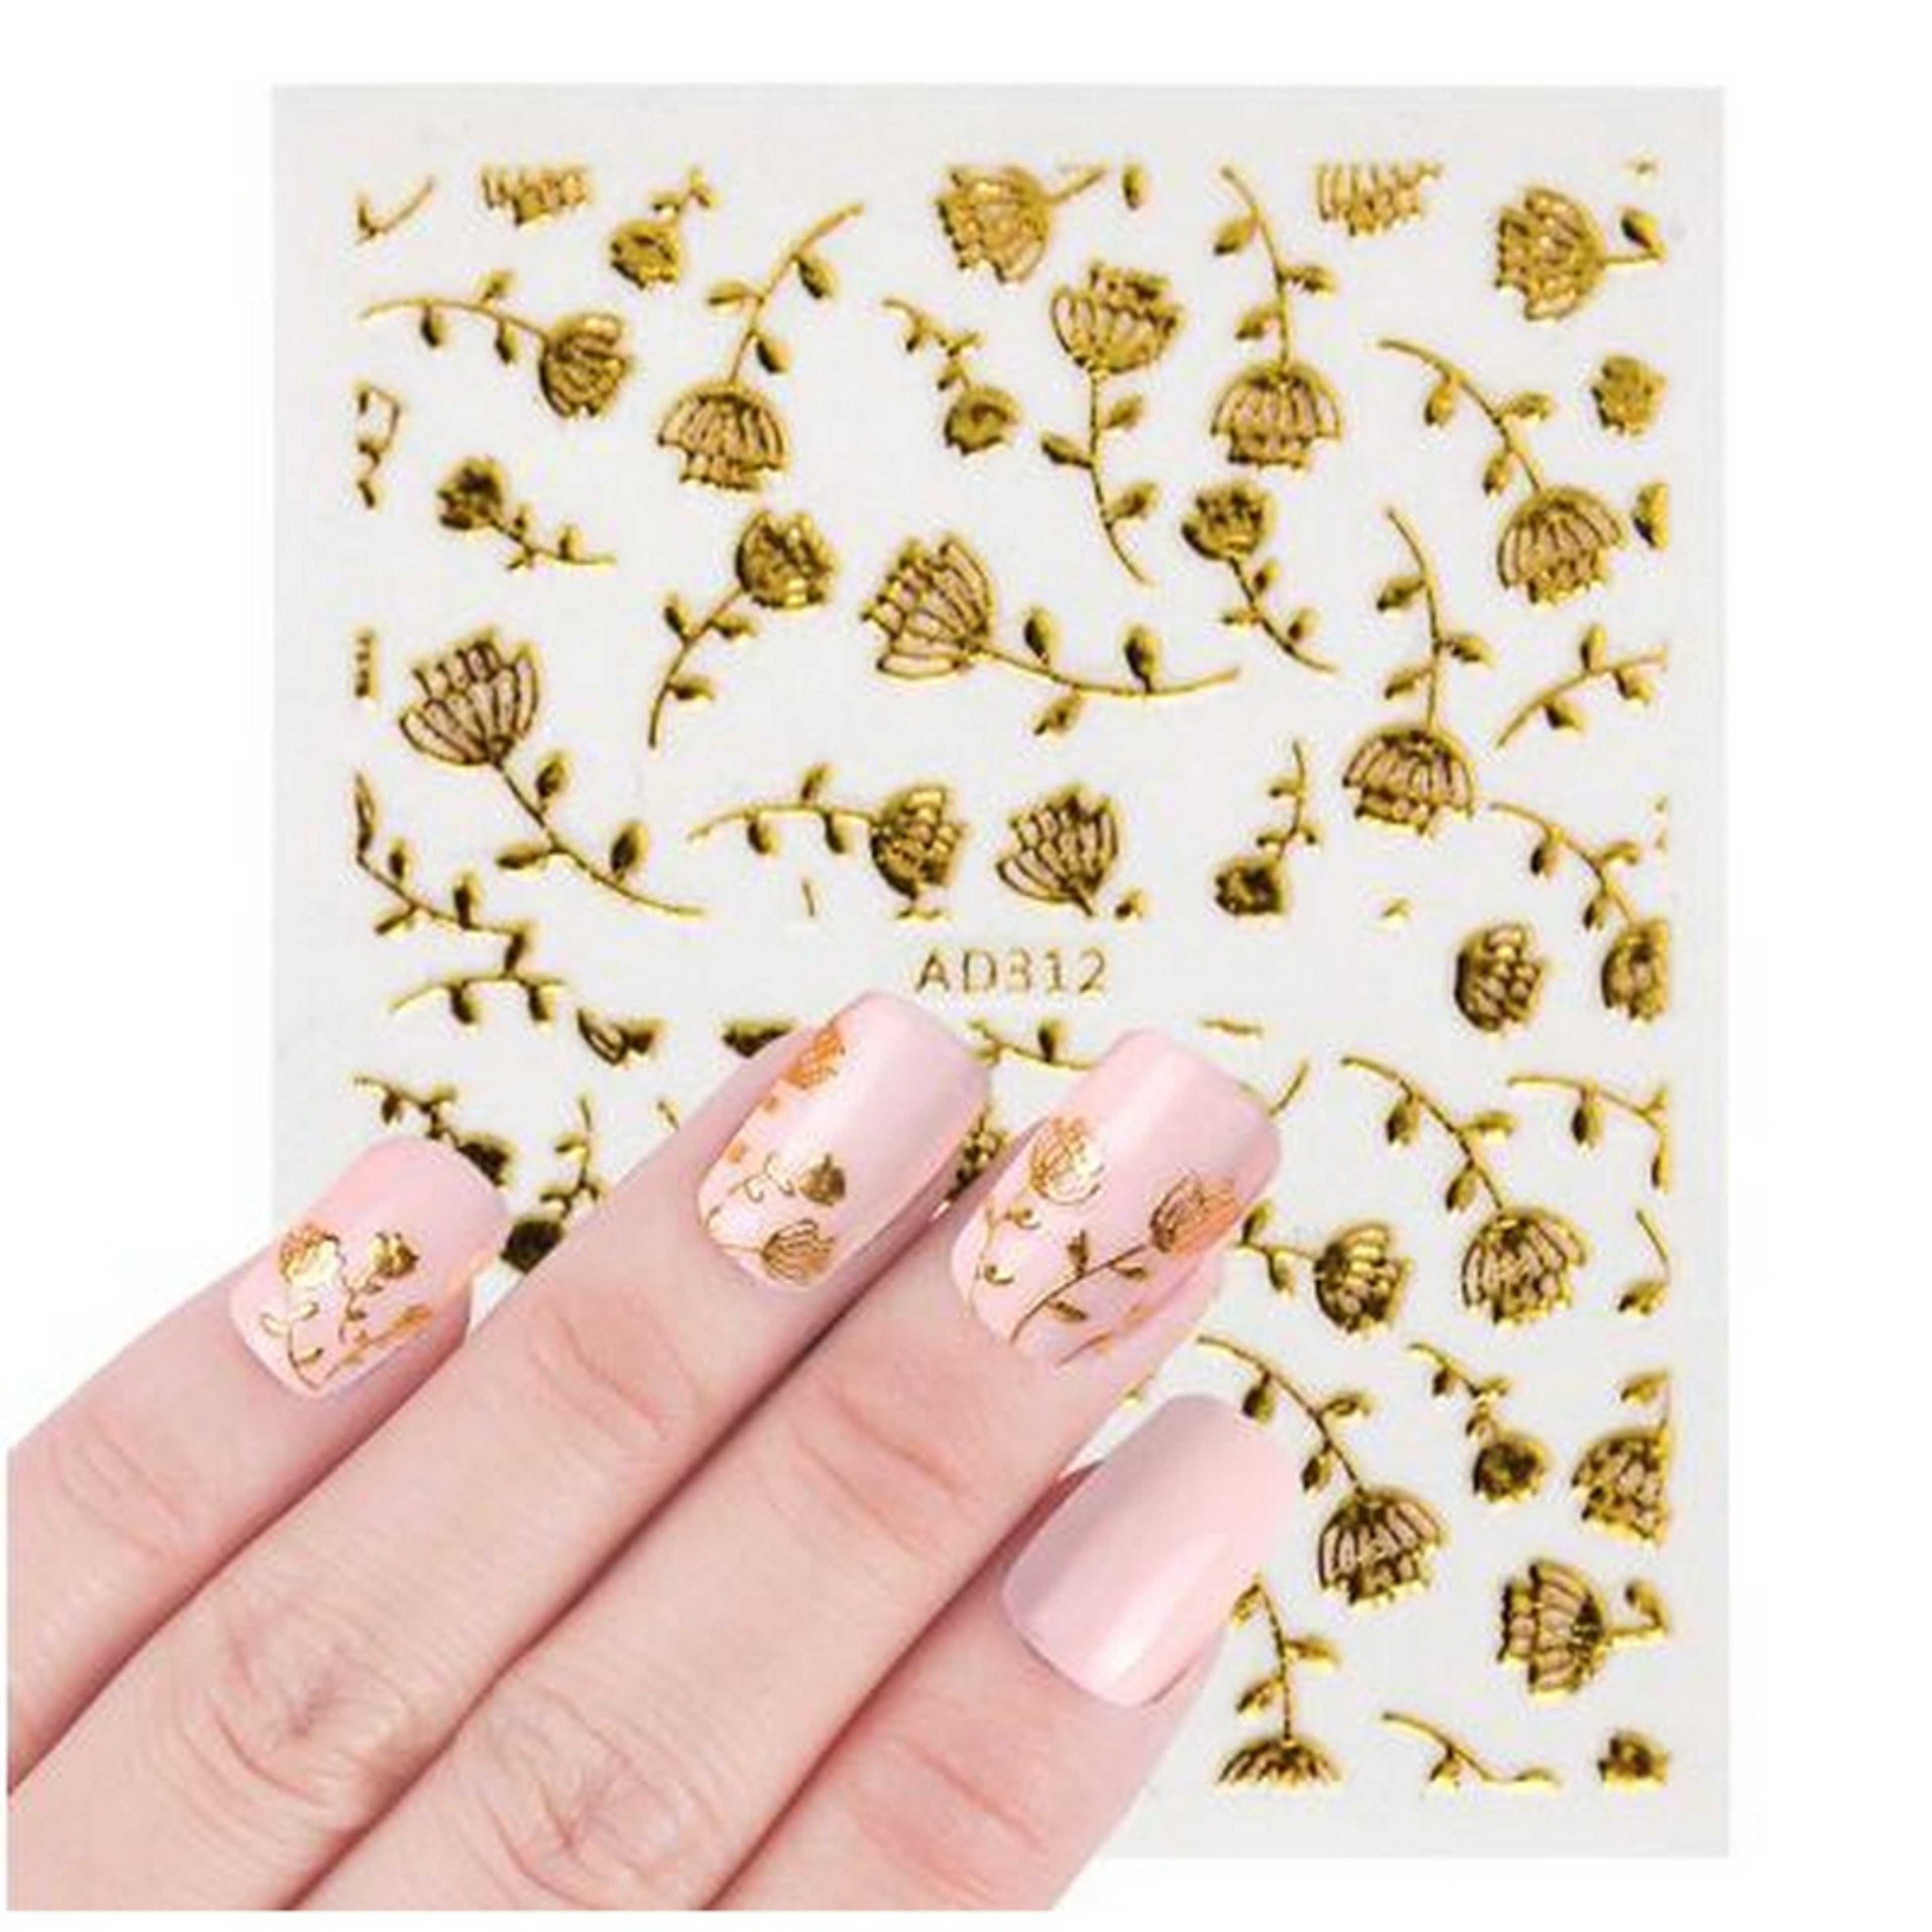 5 Pieces Golden 3D Nail Art Sticker Set Mixed Design